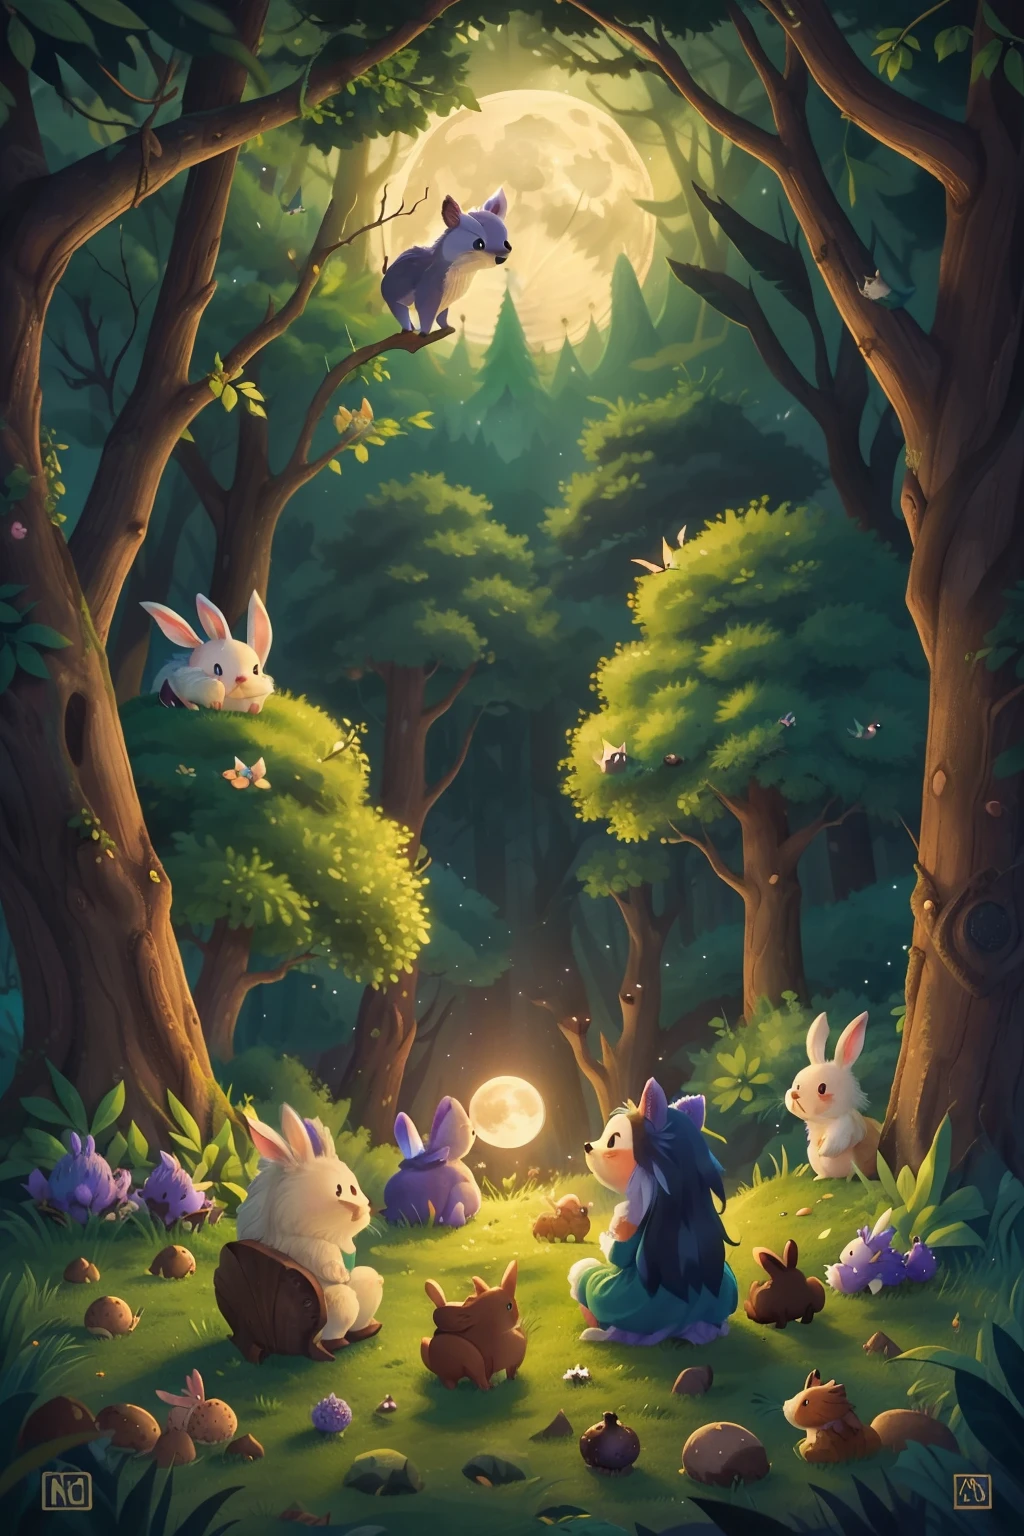 魔法森林, 满月从山后升起, 兔子和刺猬坐着看月亮